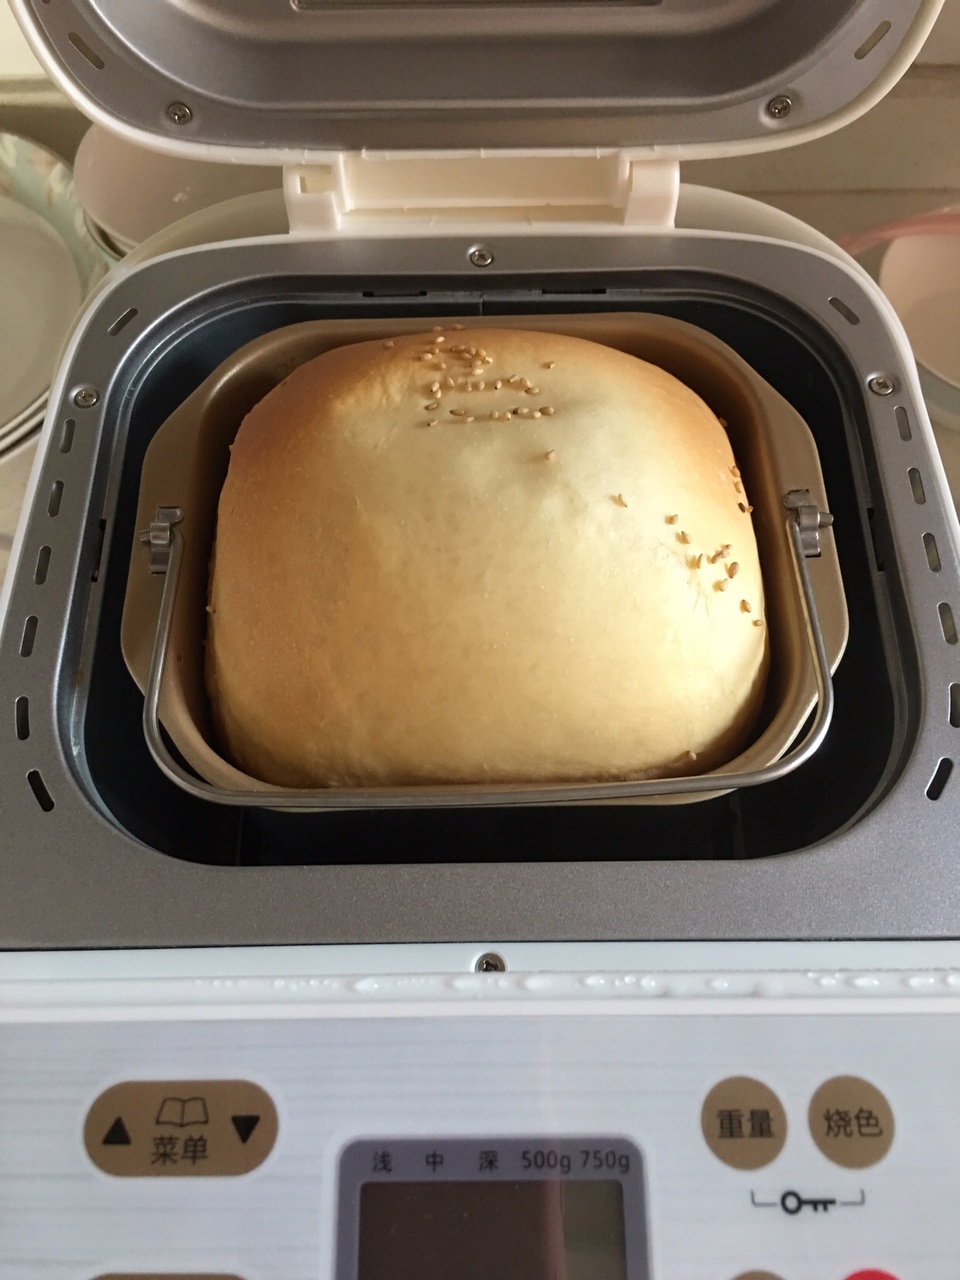 柏翠PE6280面包机一键式面包的做法